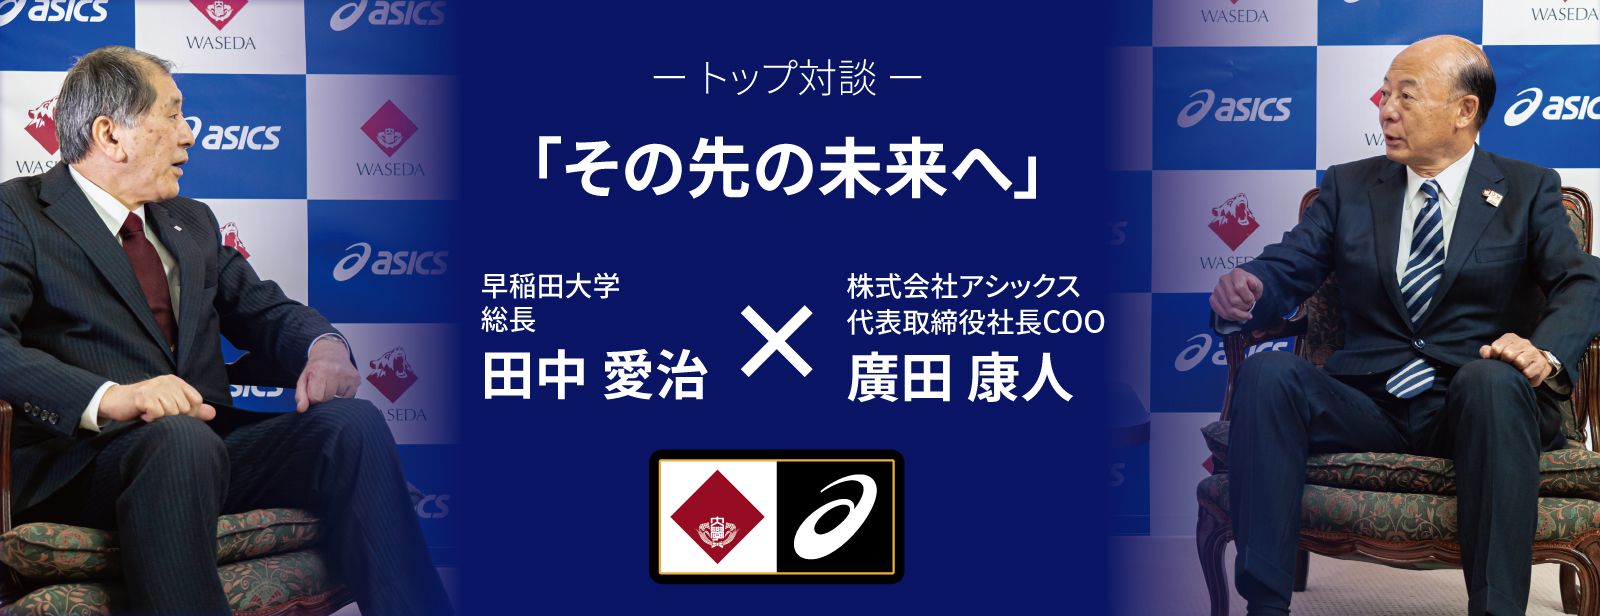 Asics公式 早稲田大学 オフィシャルライセンスグッズ コレクション アシックス